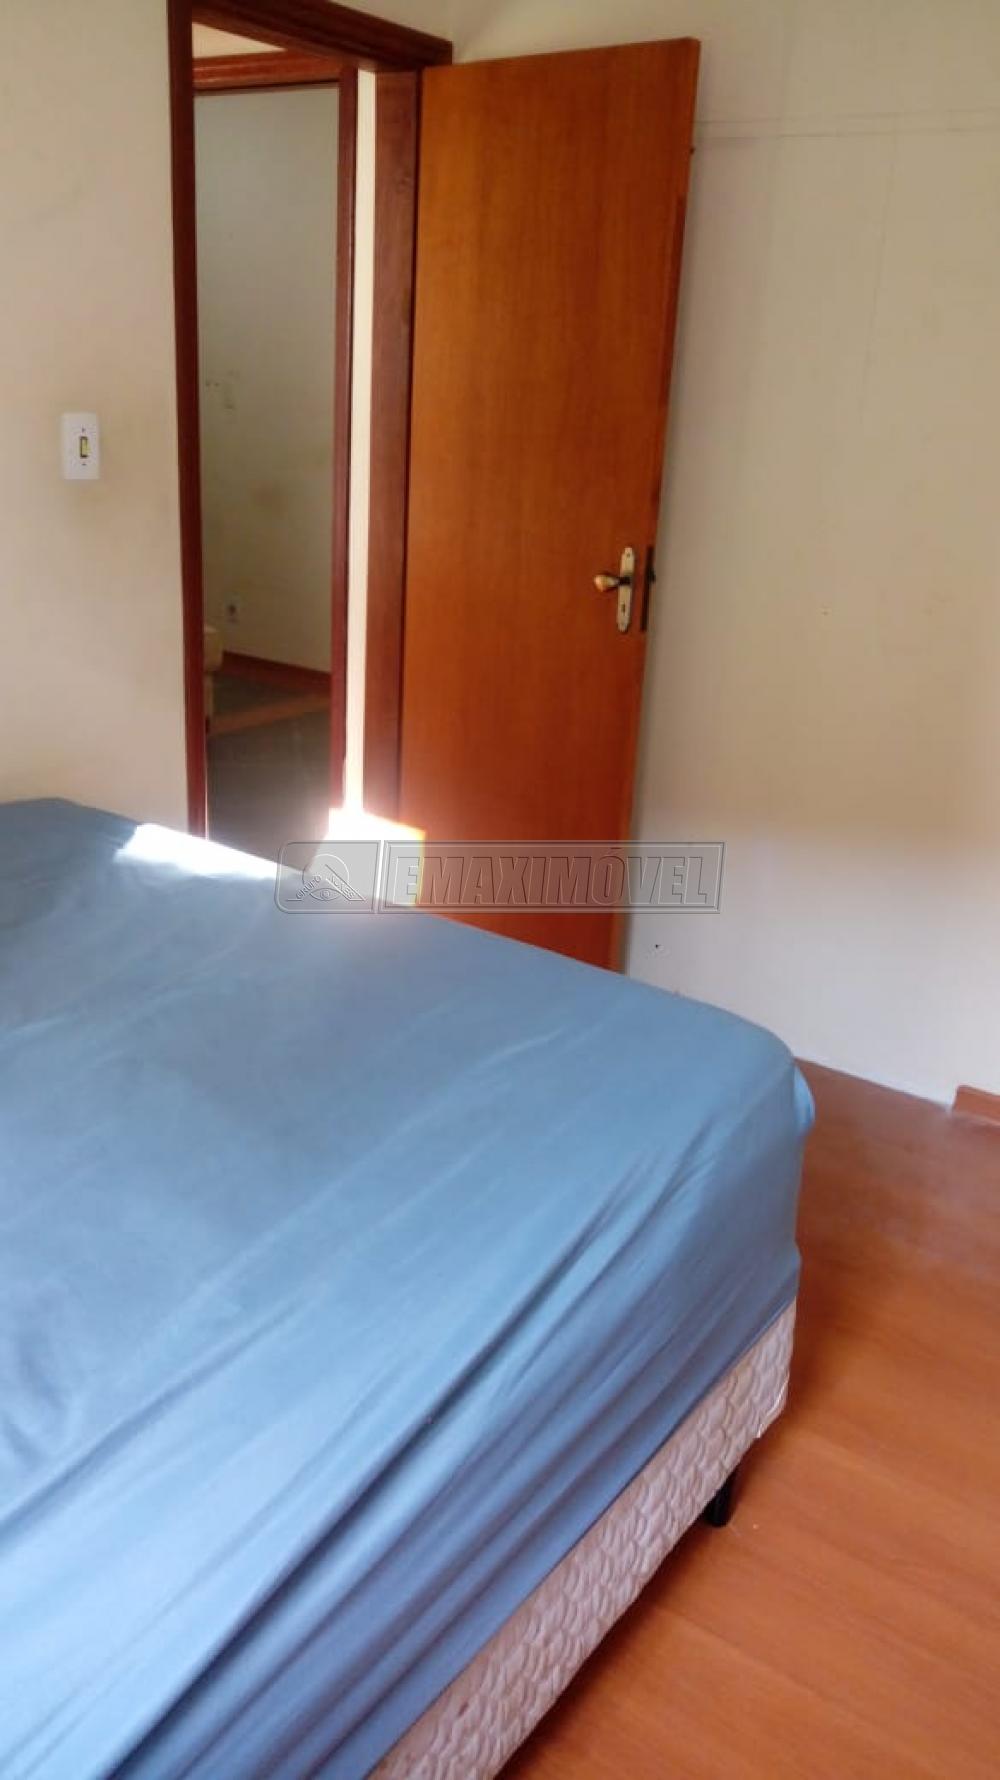 Alugar Apartamento / Padrão em Sorocaba R$ 1.000,00 - Foto 6